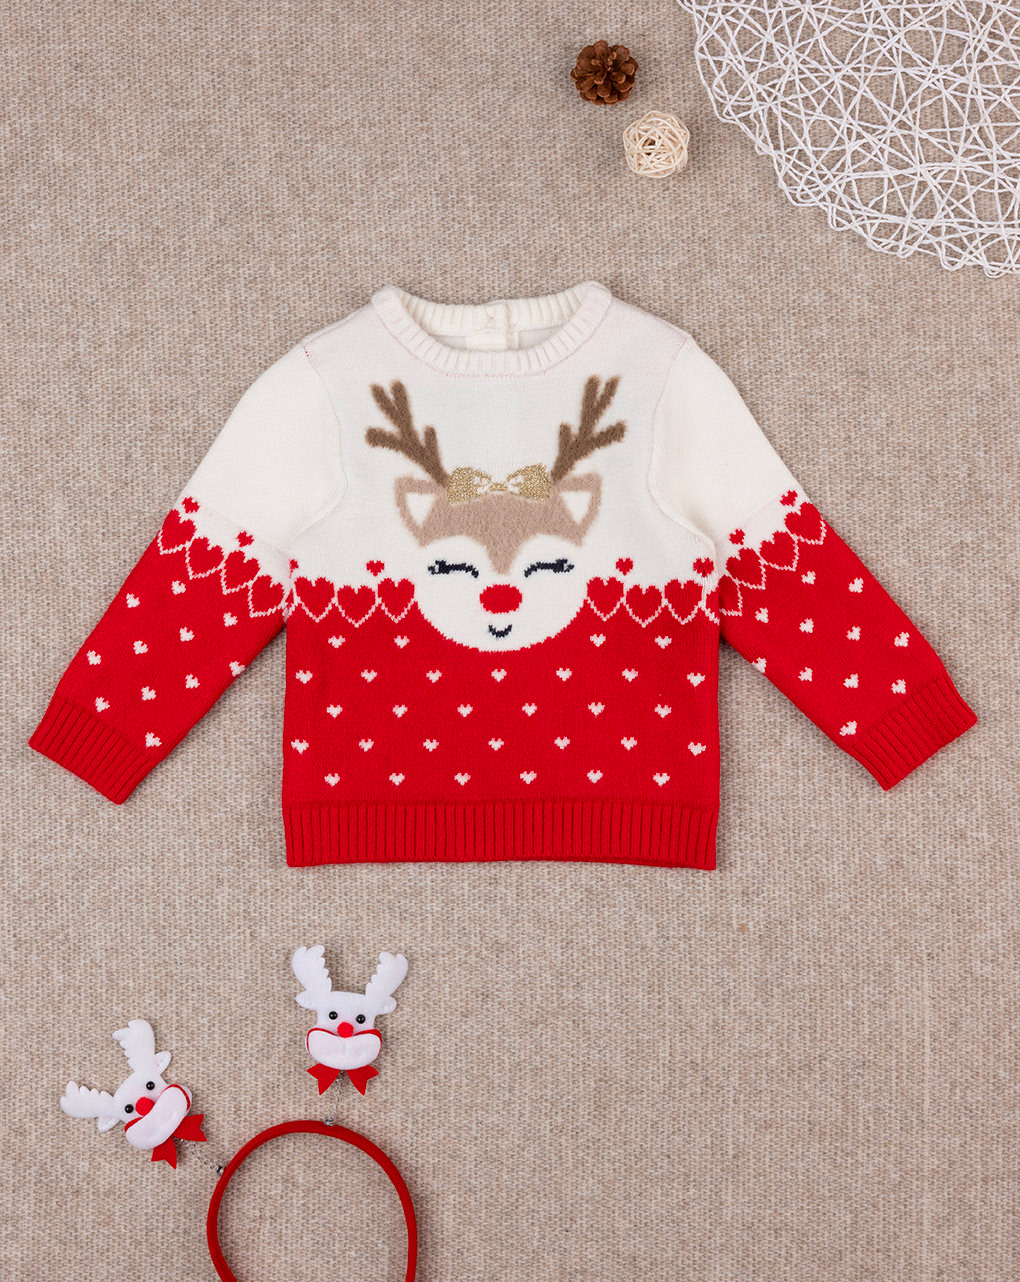 χριστουγεννιάτικο βρεφικό πουλόβερ με τάρανδο για κορίτσι